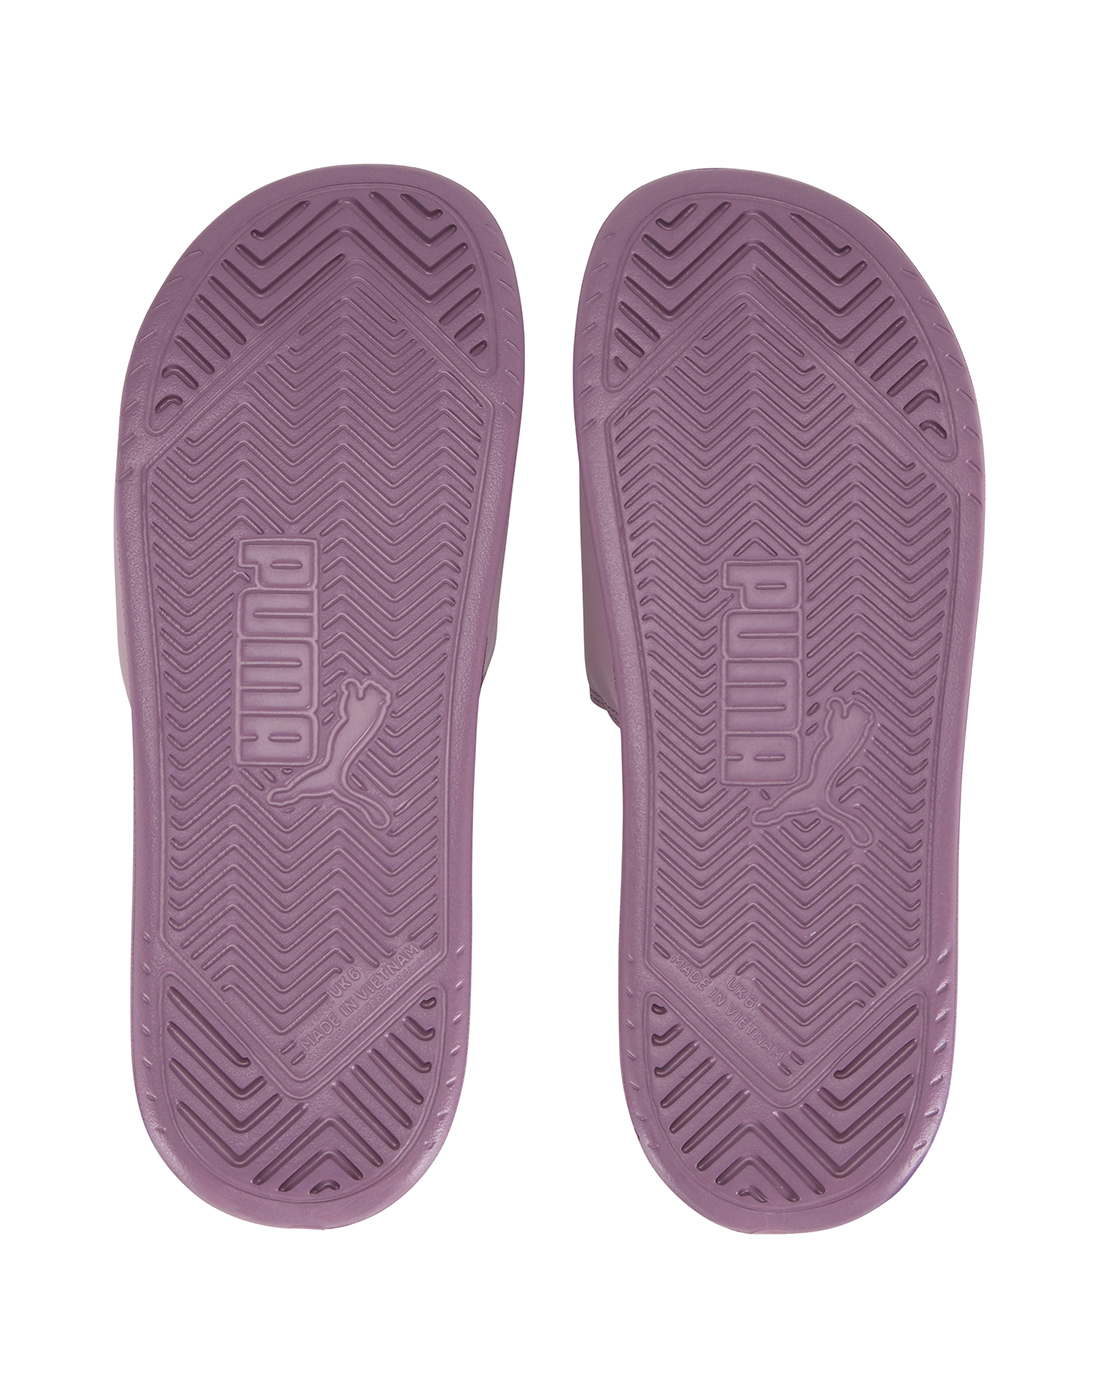 puma purple slides